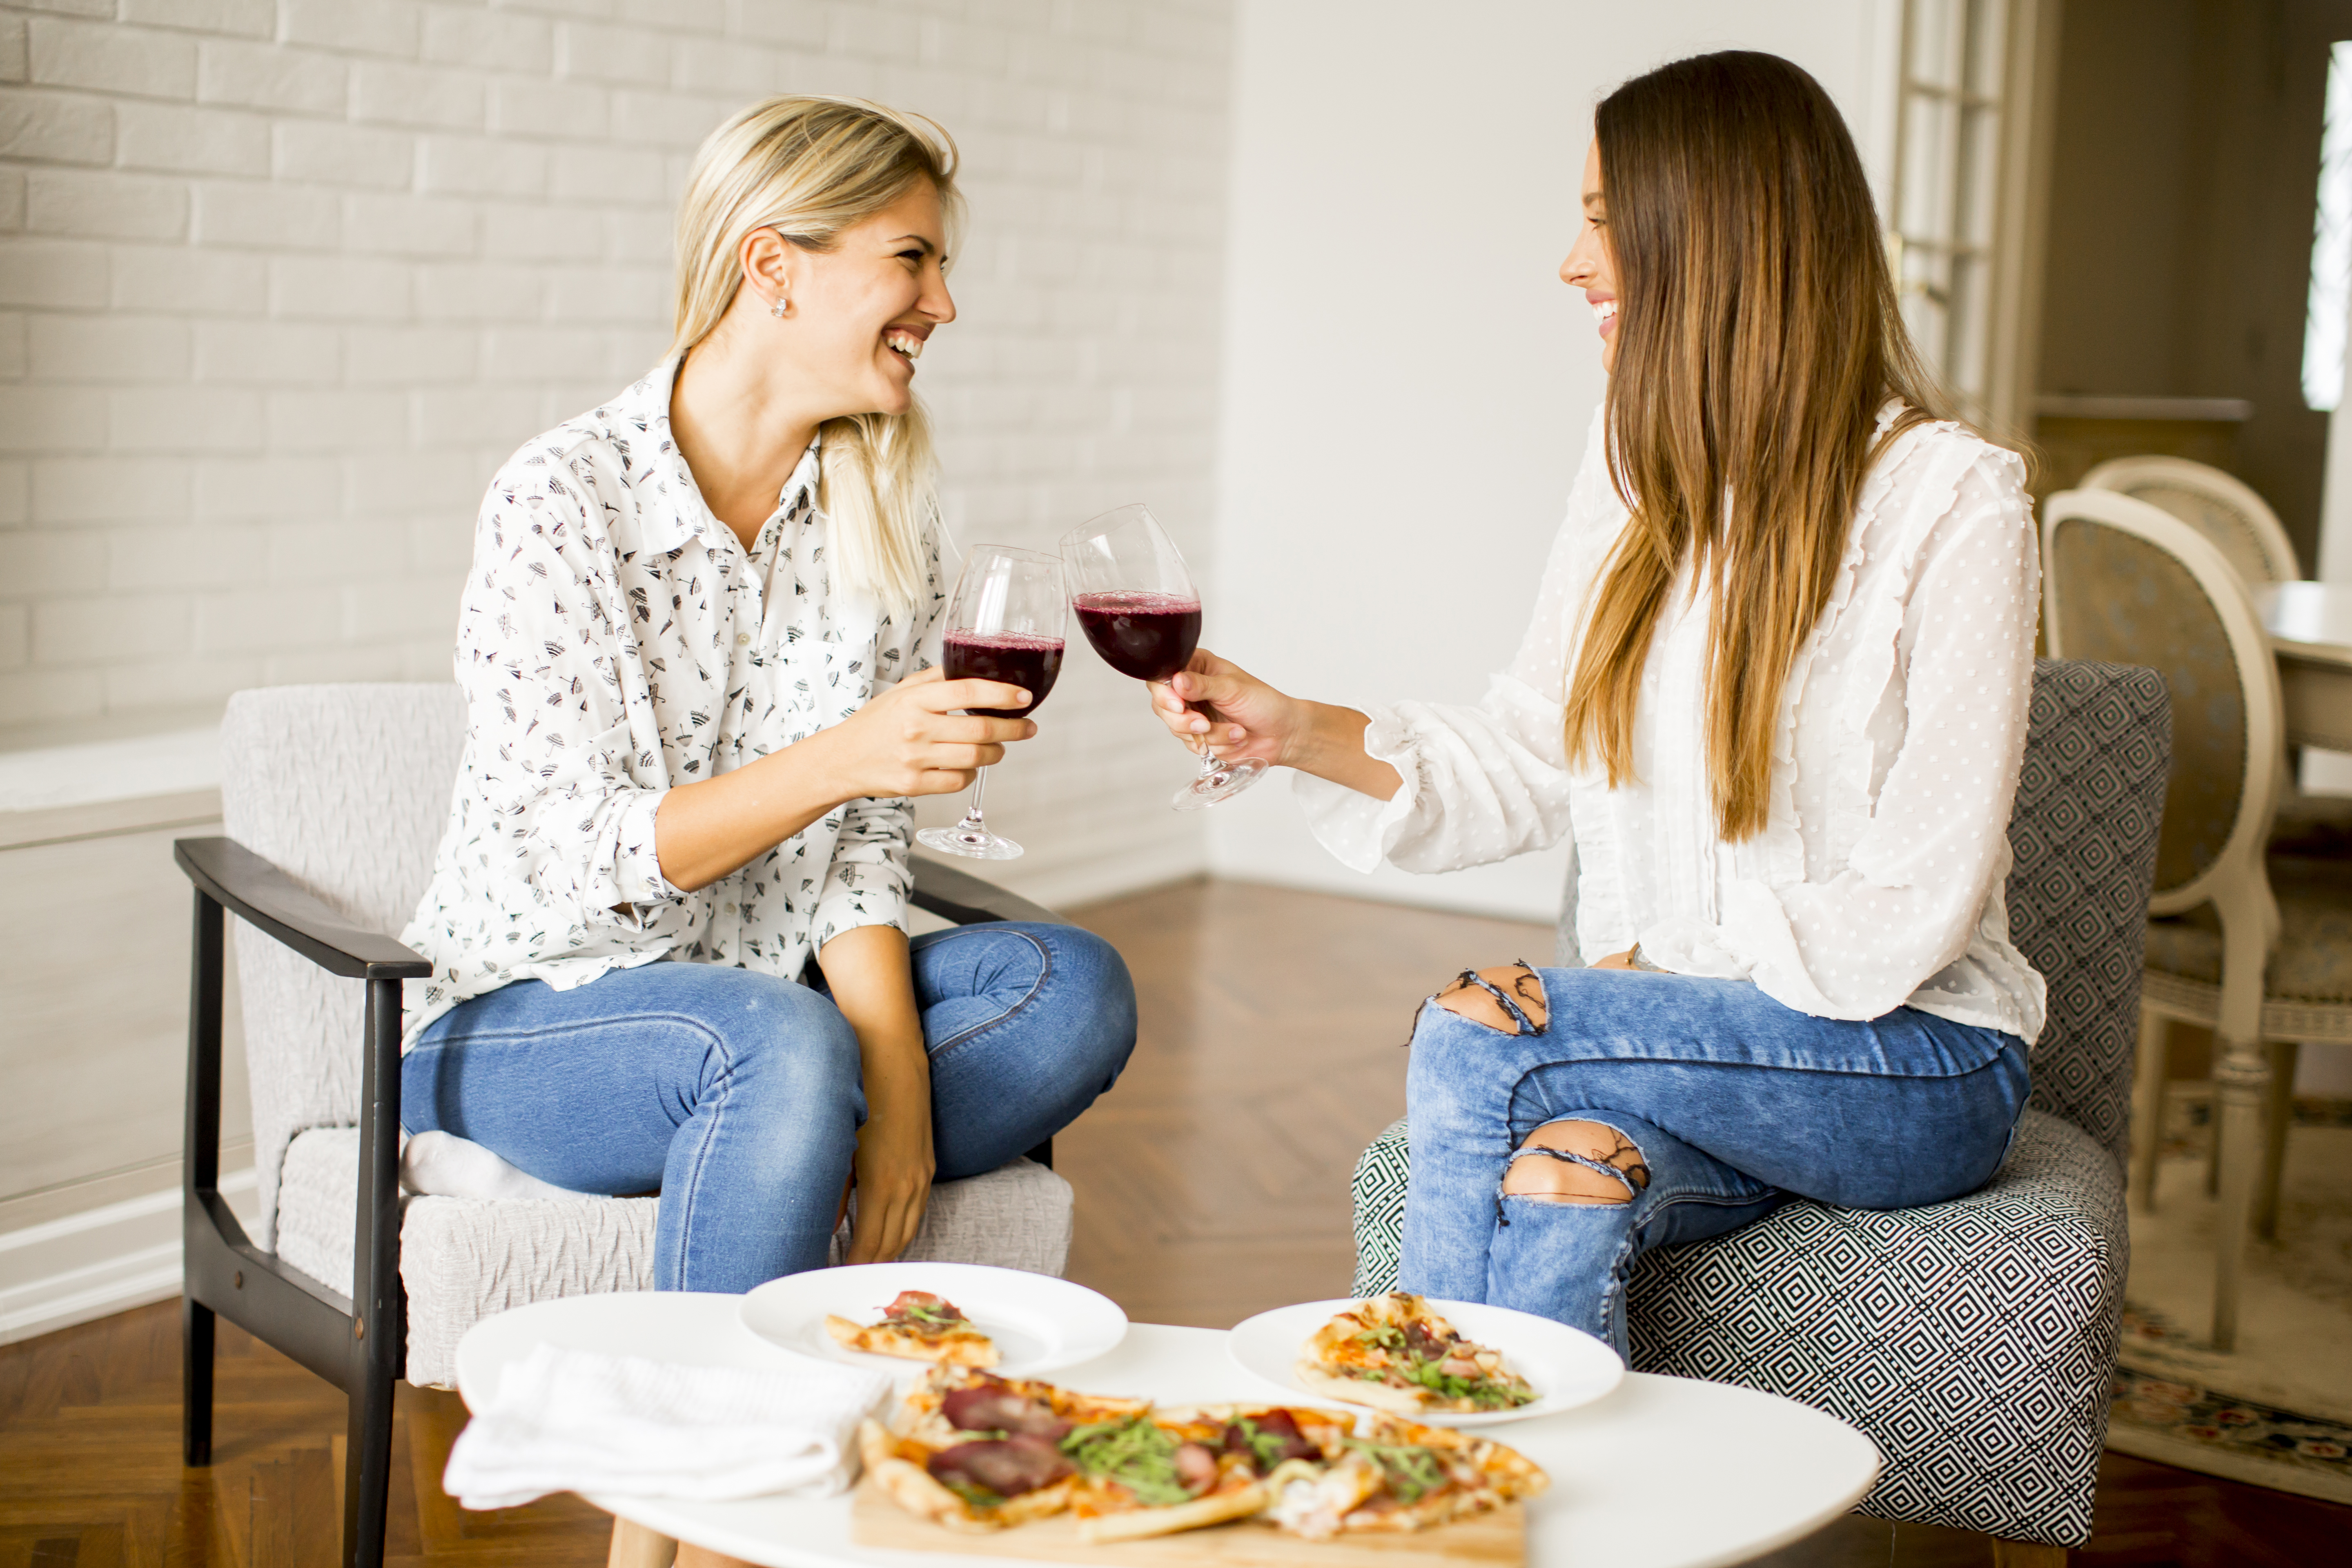 De jolies jeunes femmes mangent de la pizza et boivent du vin rouge | Source : Getty Images